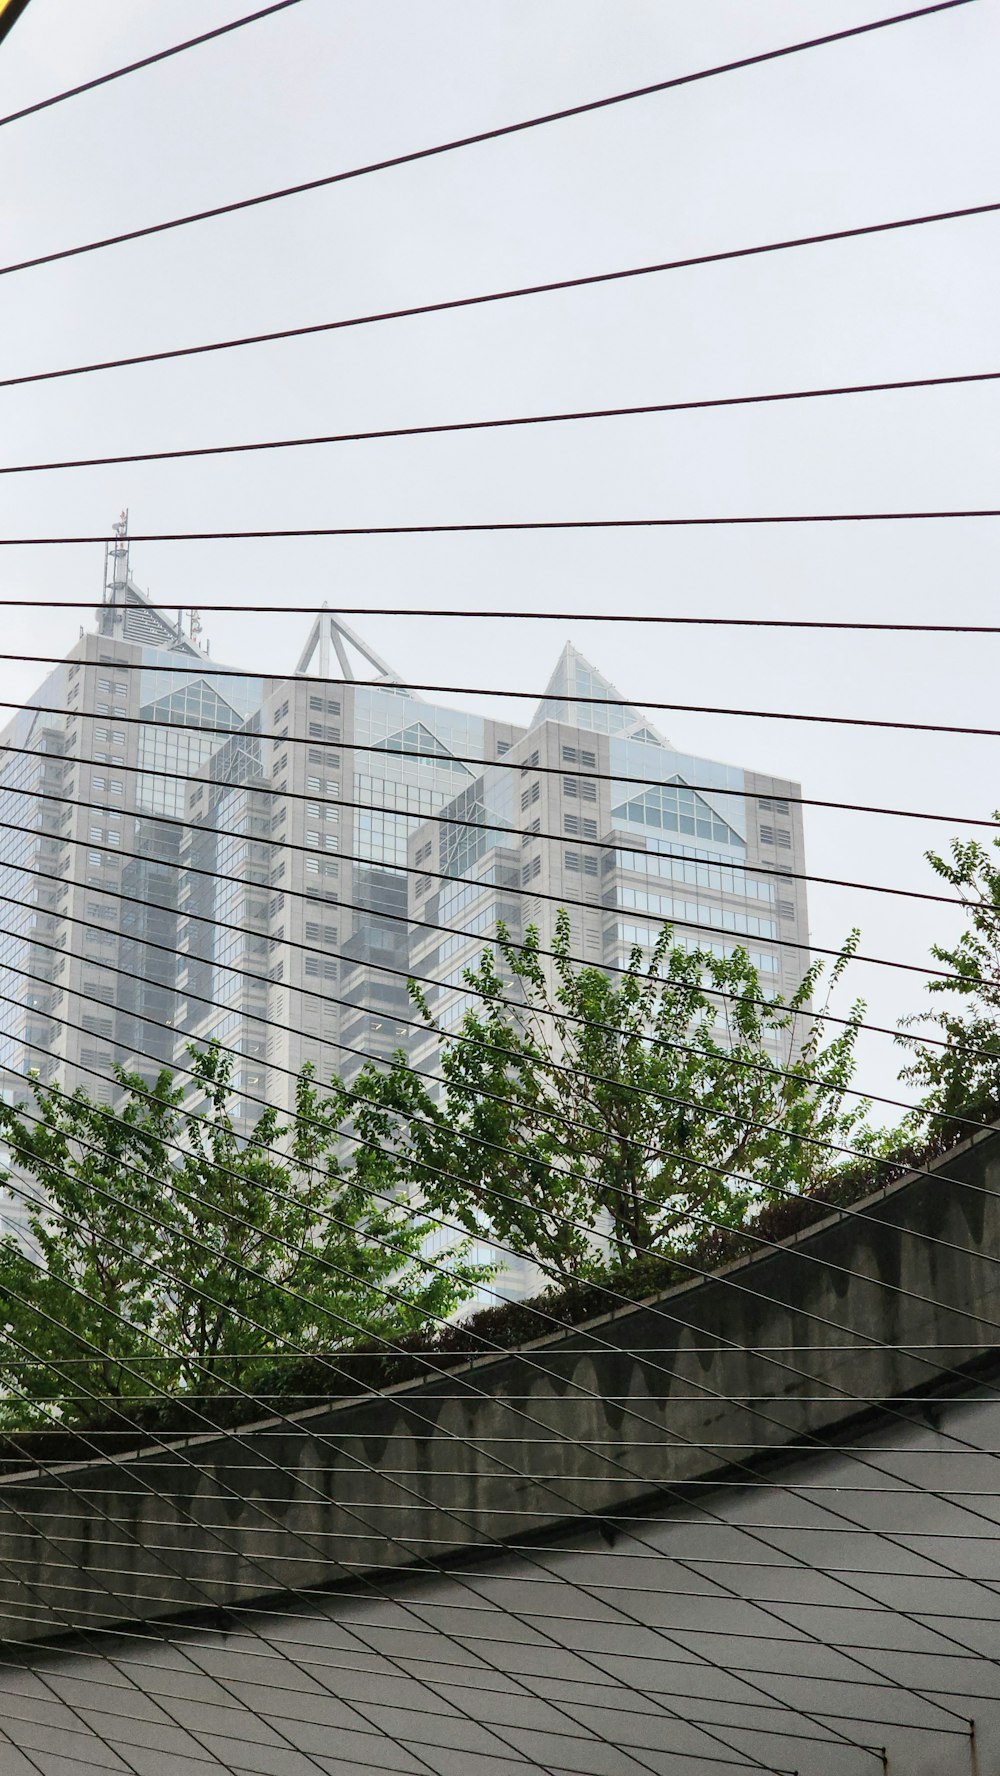 Una vista de un edificio muy alto a través de unos cables